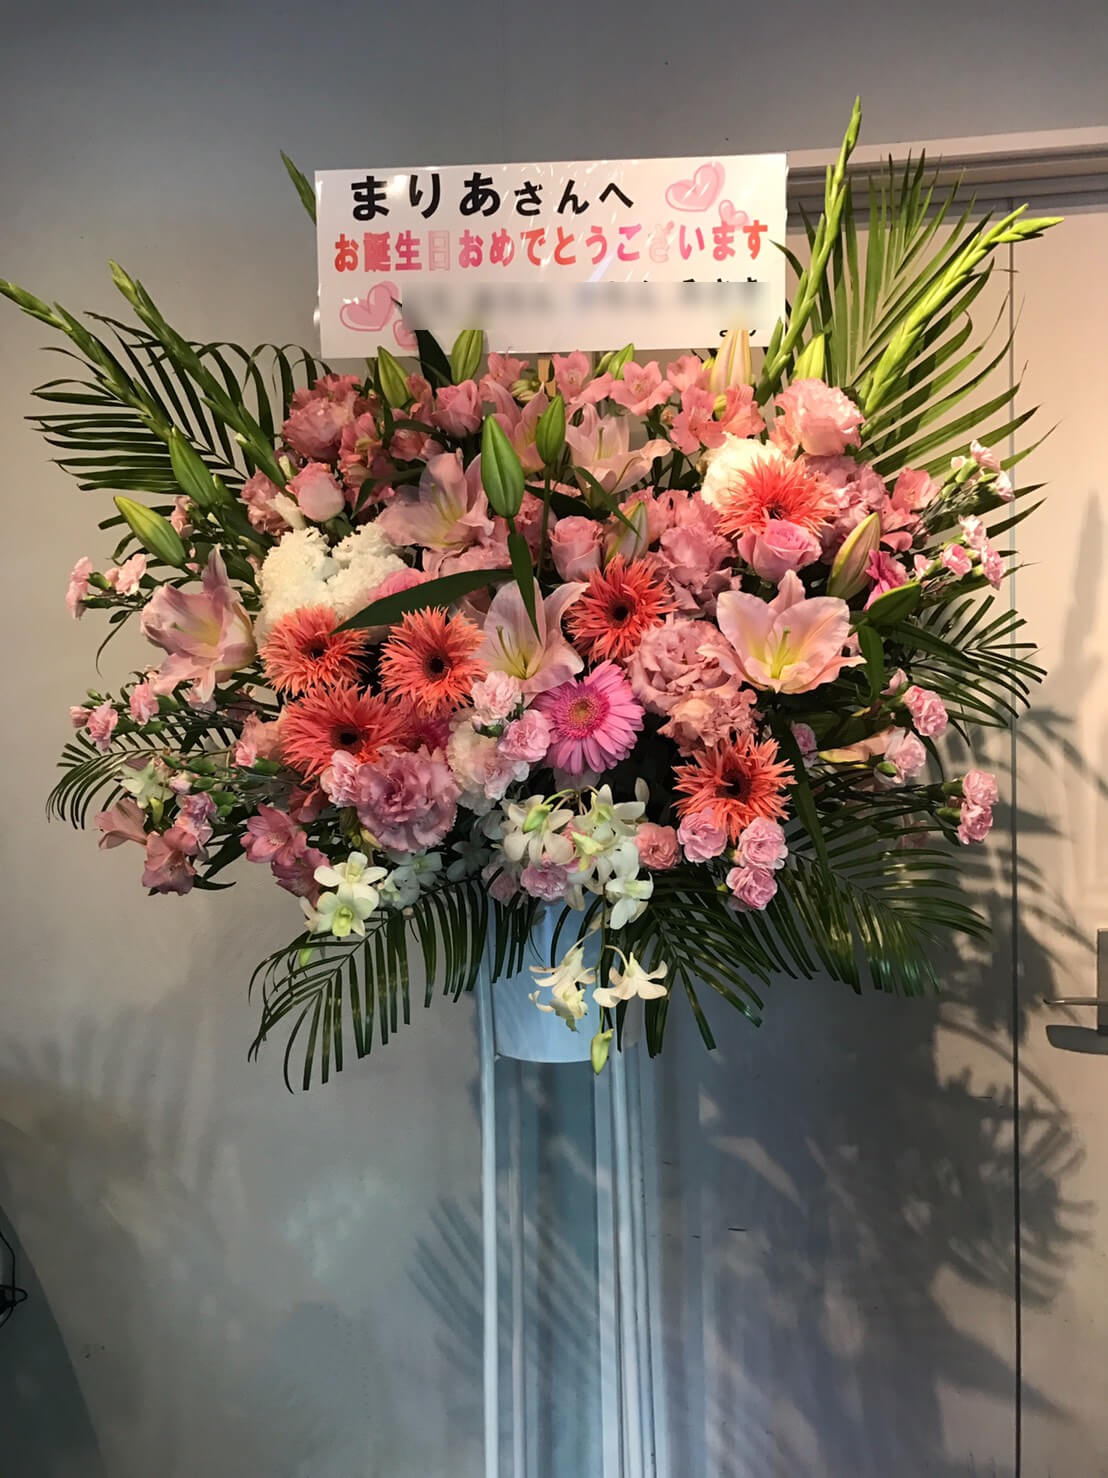 北千住clubA3 まりあ様の誕生日祝いピンク系スタンド花